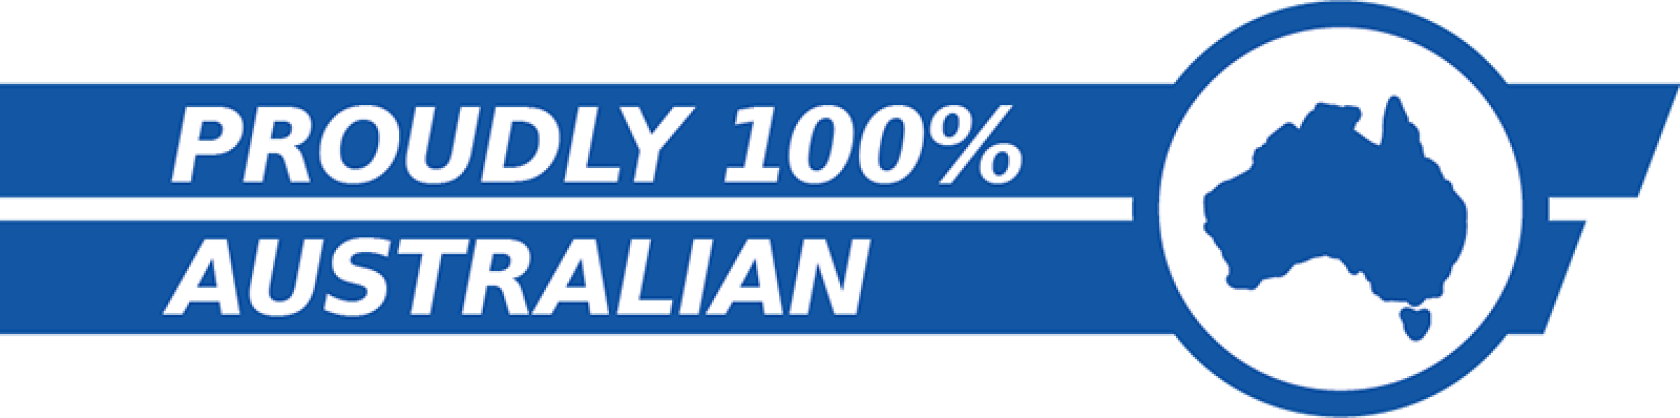 Socobell is 100% Australian